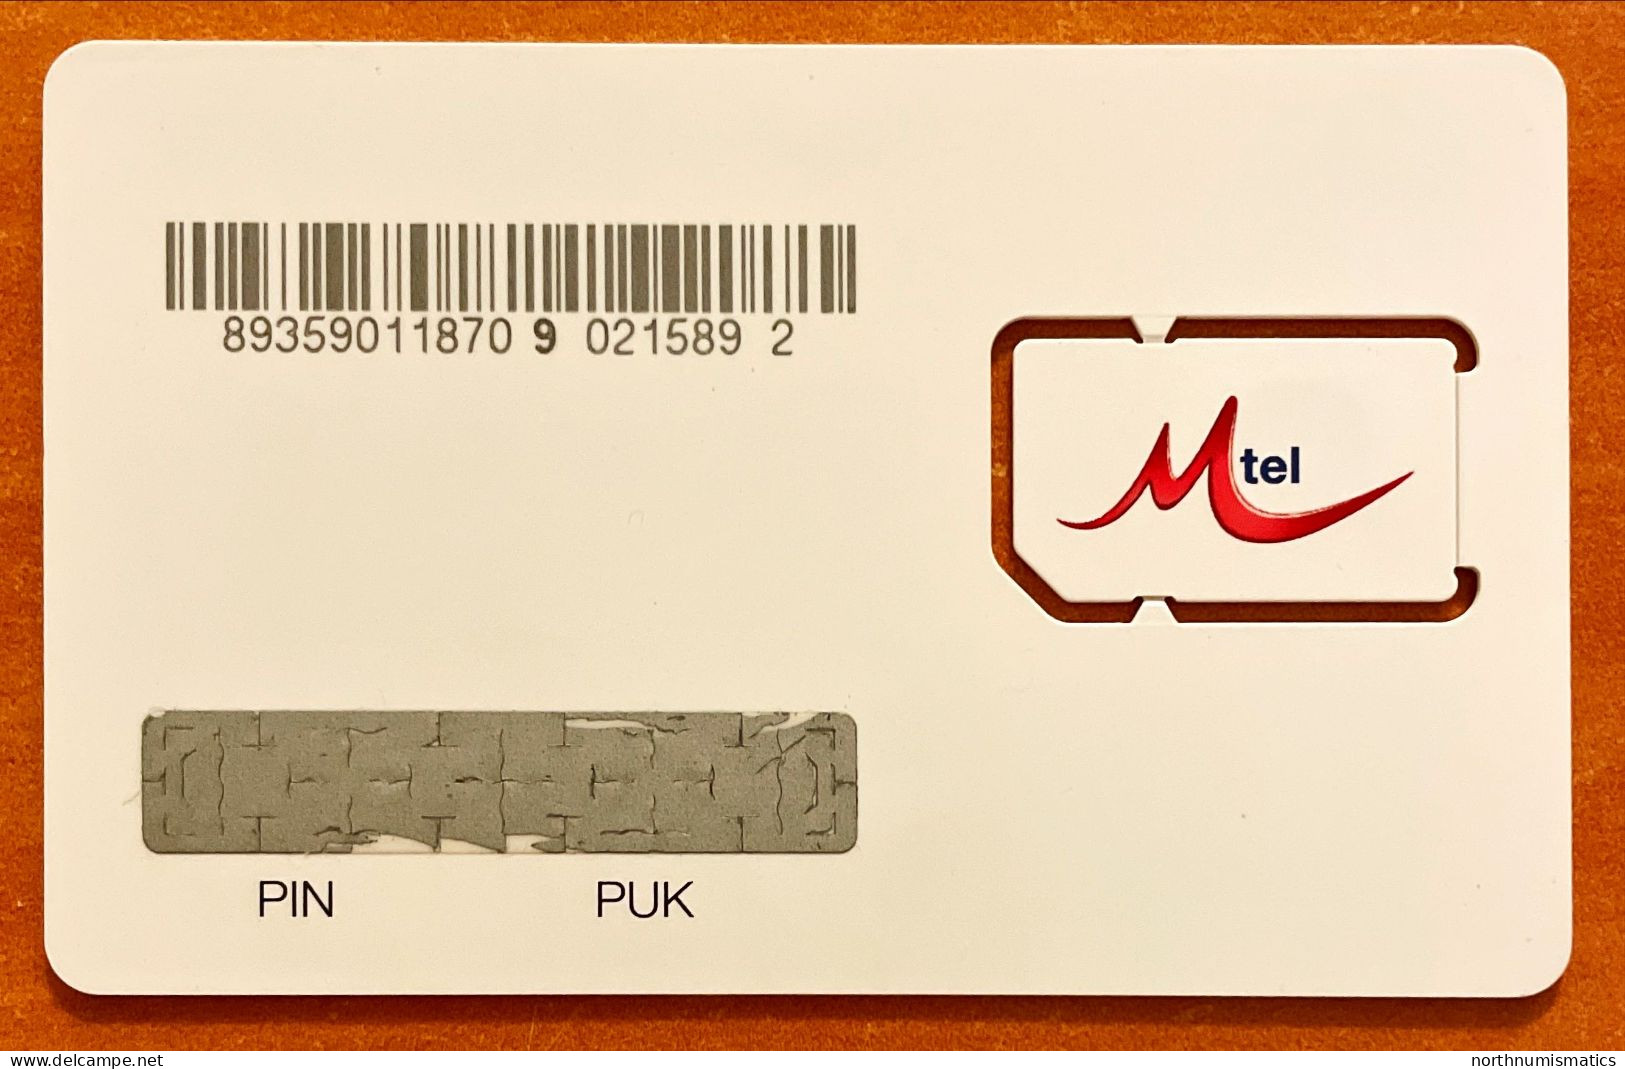 Mtel  Gsm  Original Chip Sim Card Unused - Collezioni